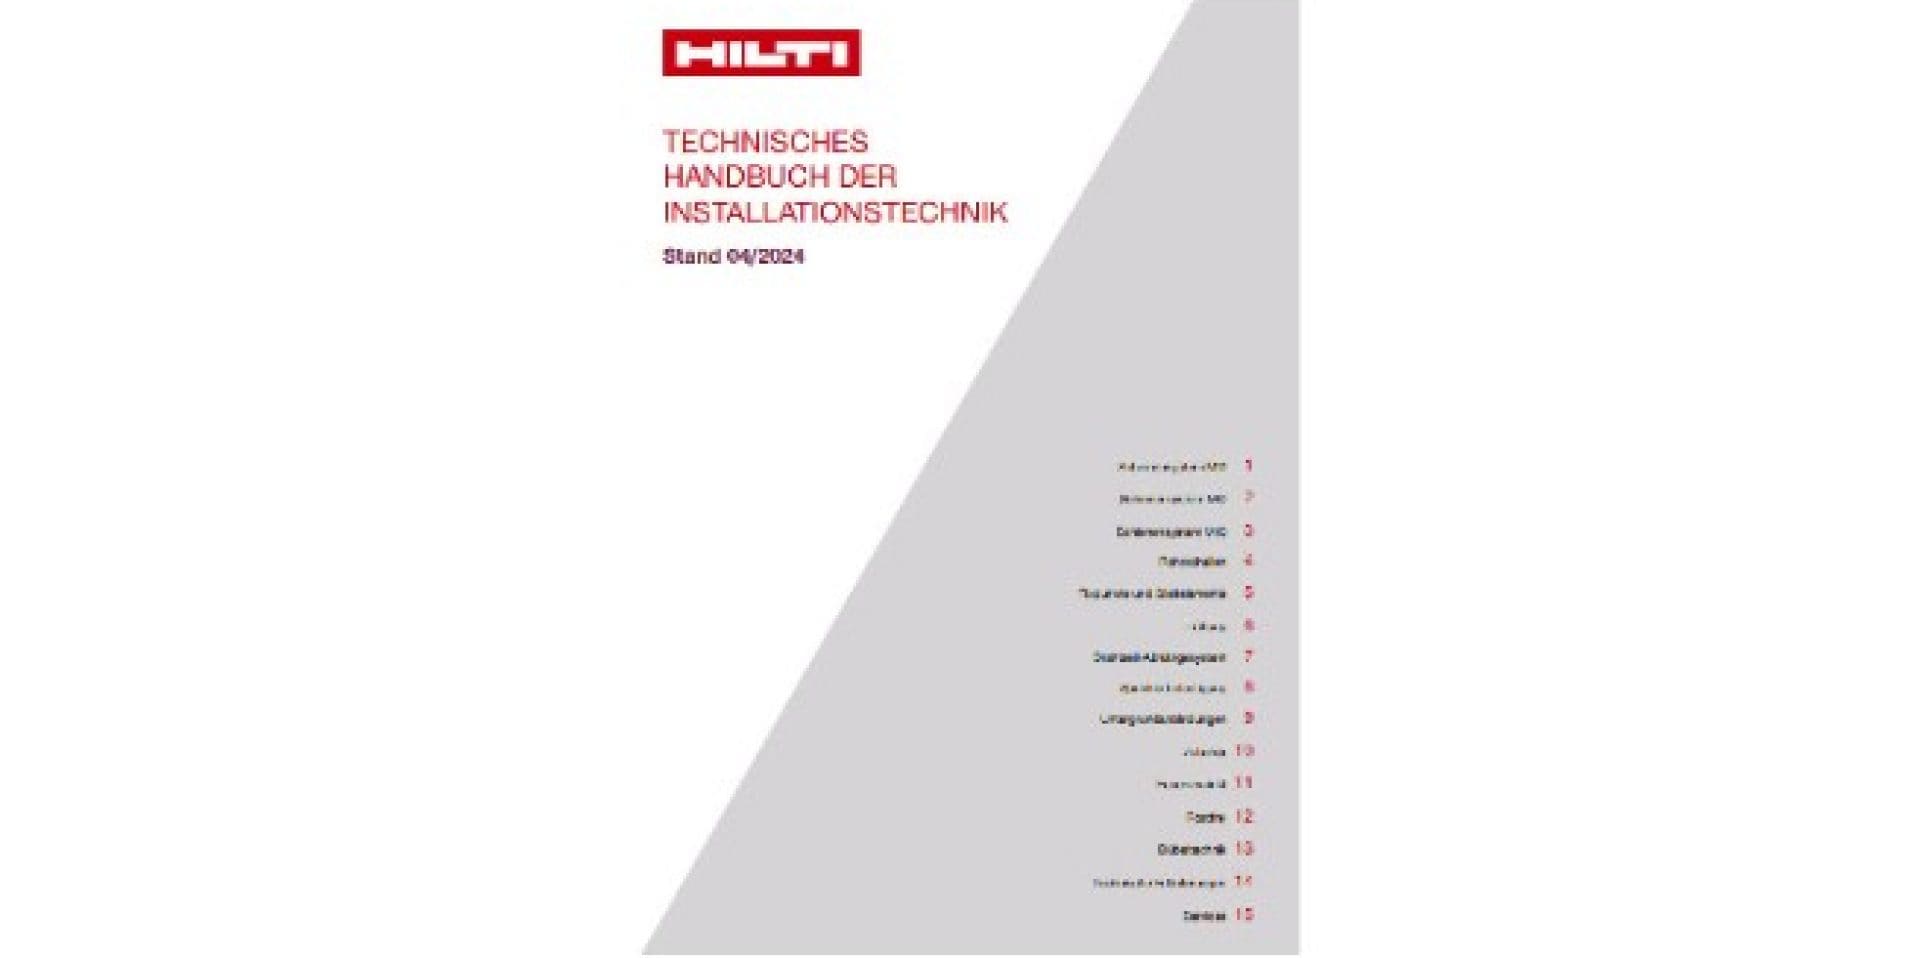 Technisches Handbuch der Installationstechnik